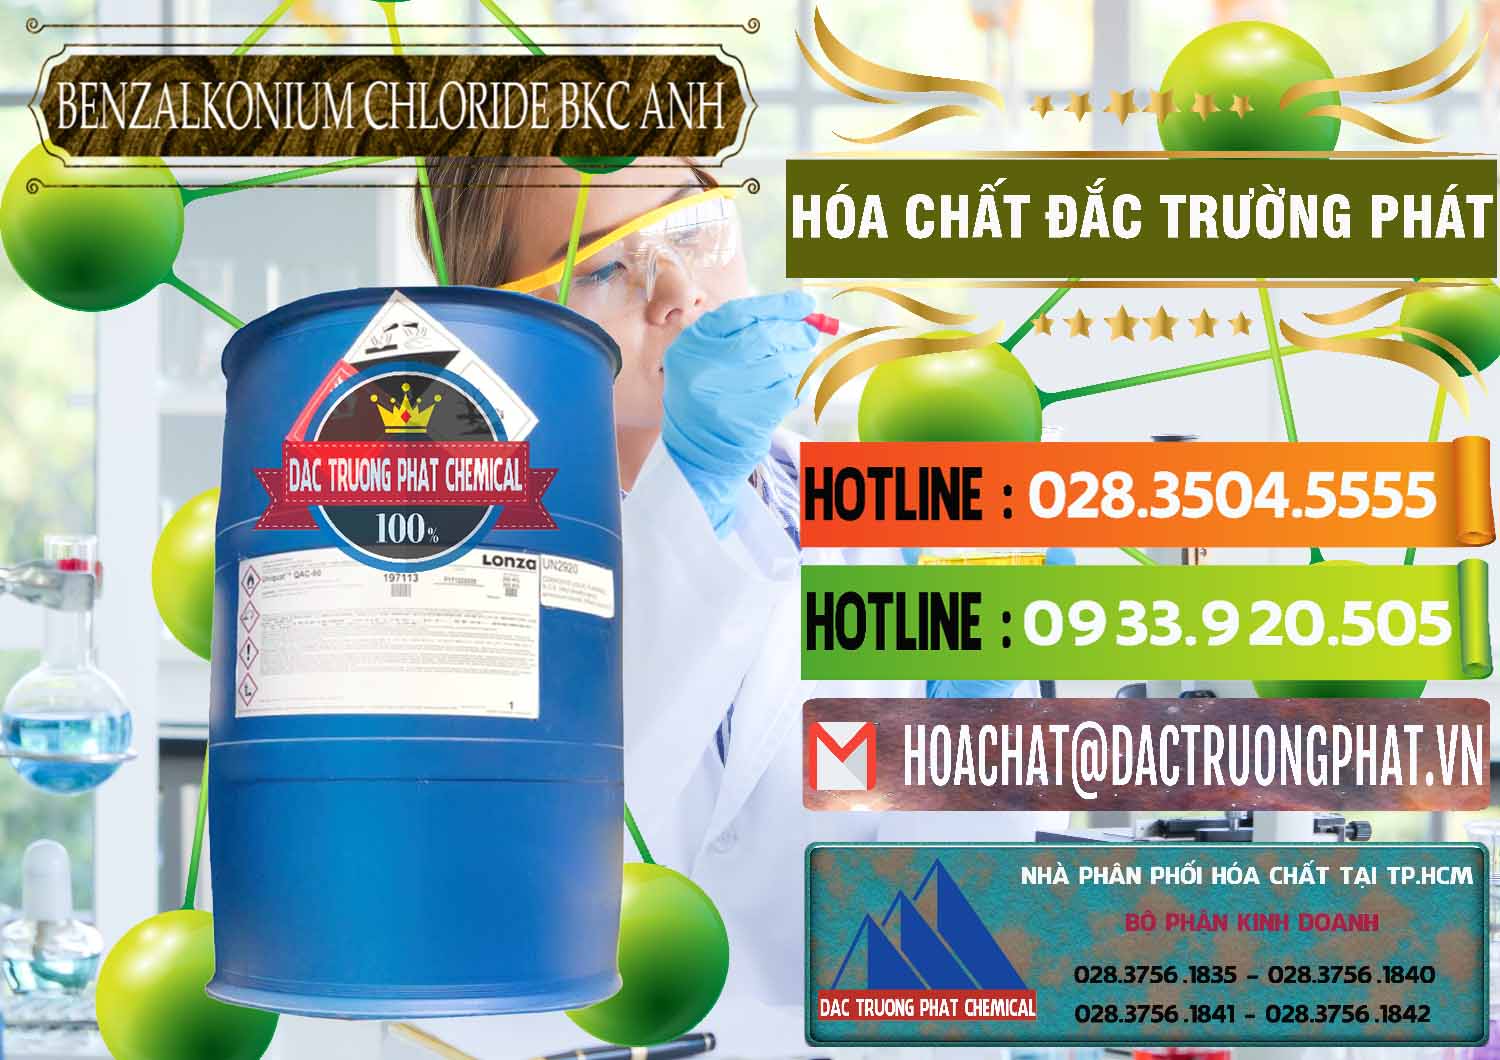 Cty cung cấp - bán BKC - Benzalkonium Chloride 80% Anh Quốc Uk Kingdoms - 0457 - Phân phối ( kinh doanh ) hóa chất tại TP.HCM - cungcaphoachat.com.vn